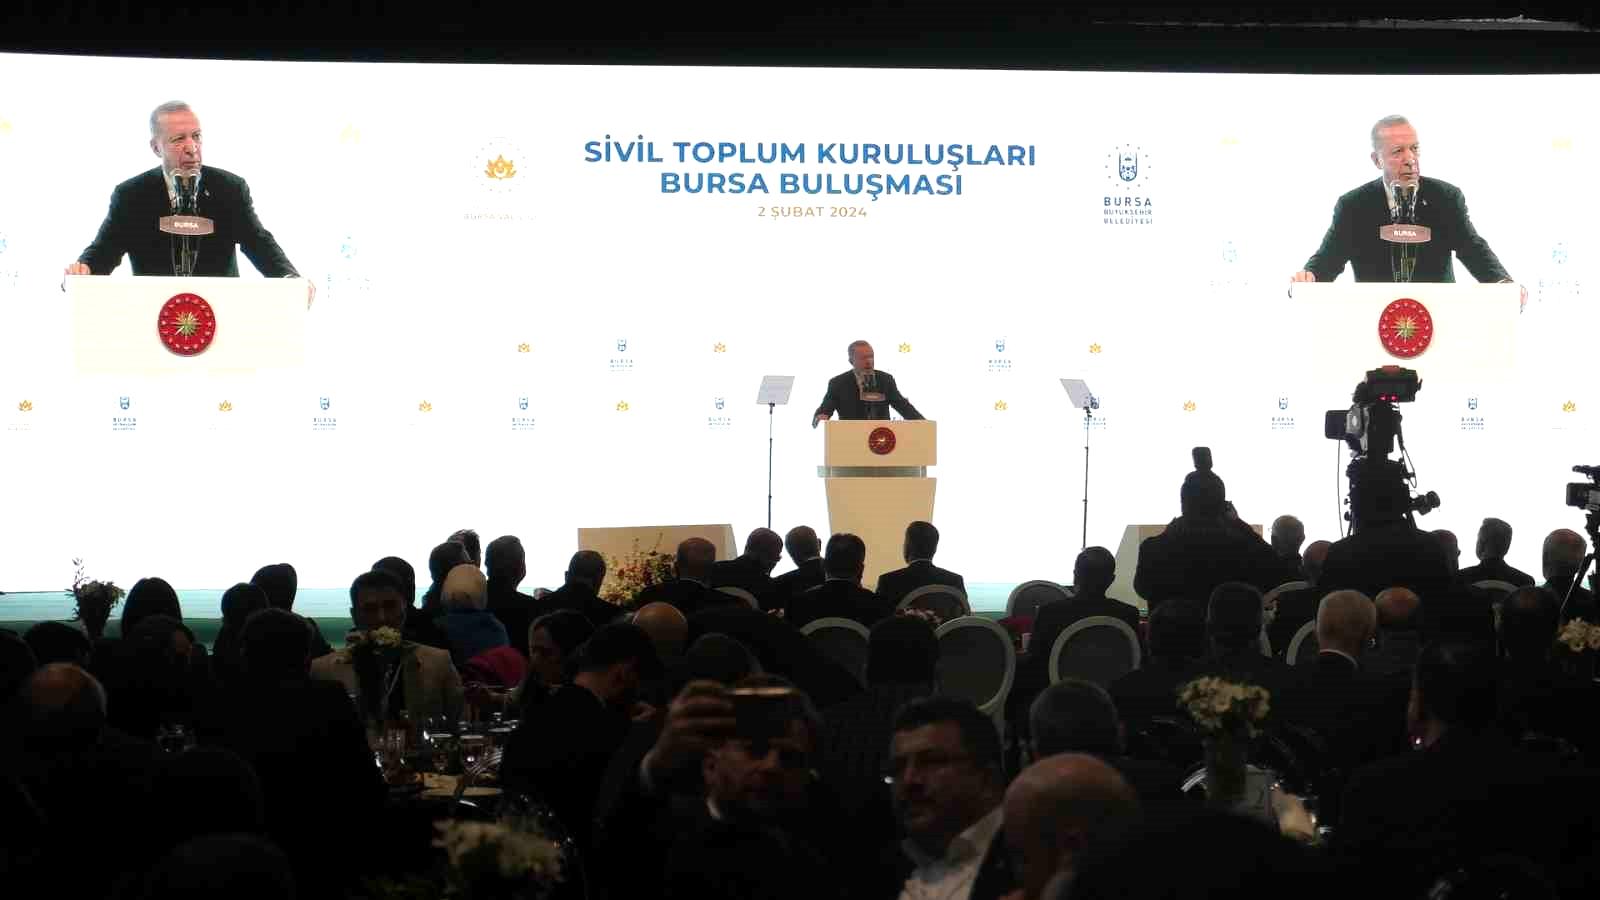 Cumhurbaşkanı Erdoğan: “Türkiye’nin ve Türk Milleti’nin verilmiş sadakası olduğunu gün geçtikçe göreceğiz”